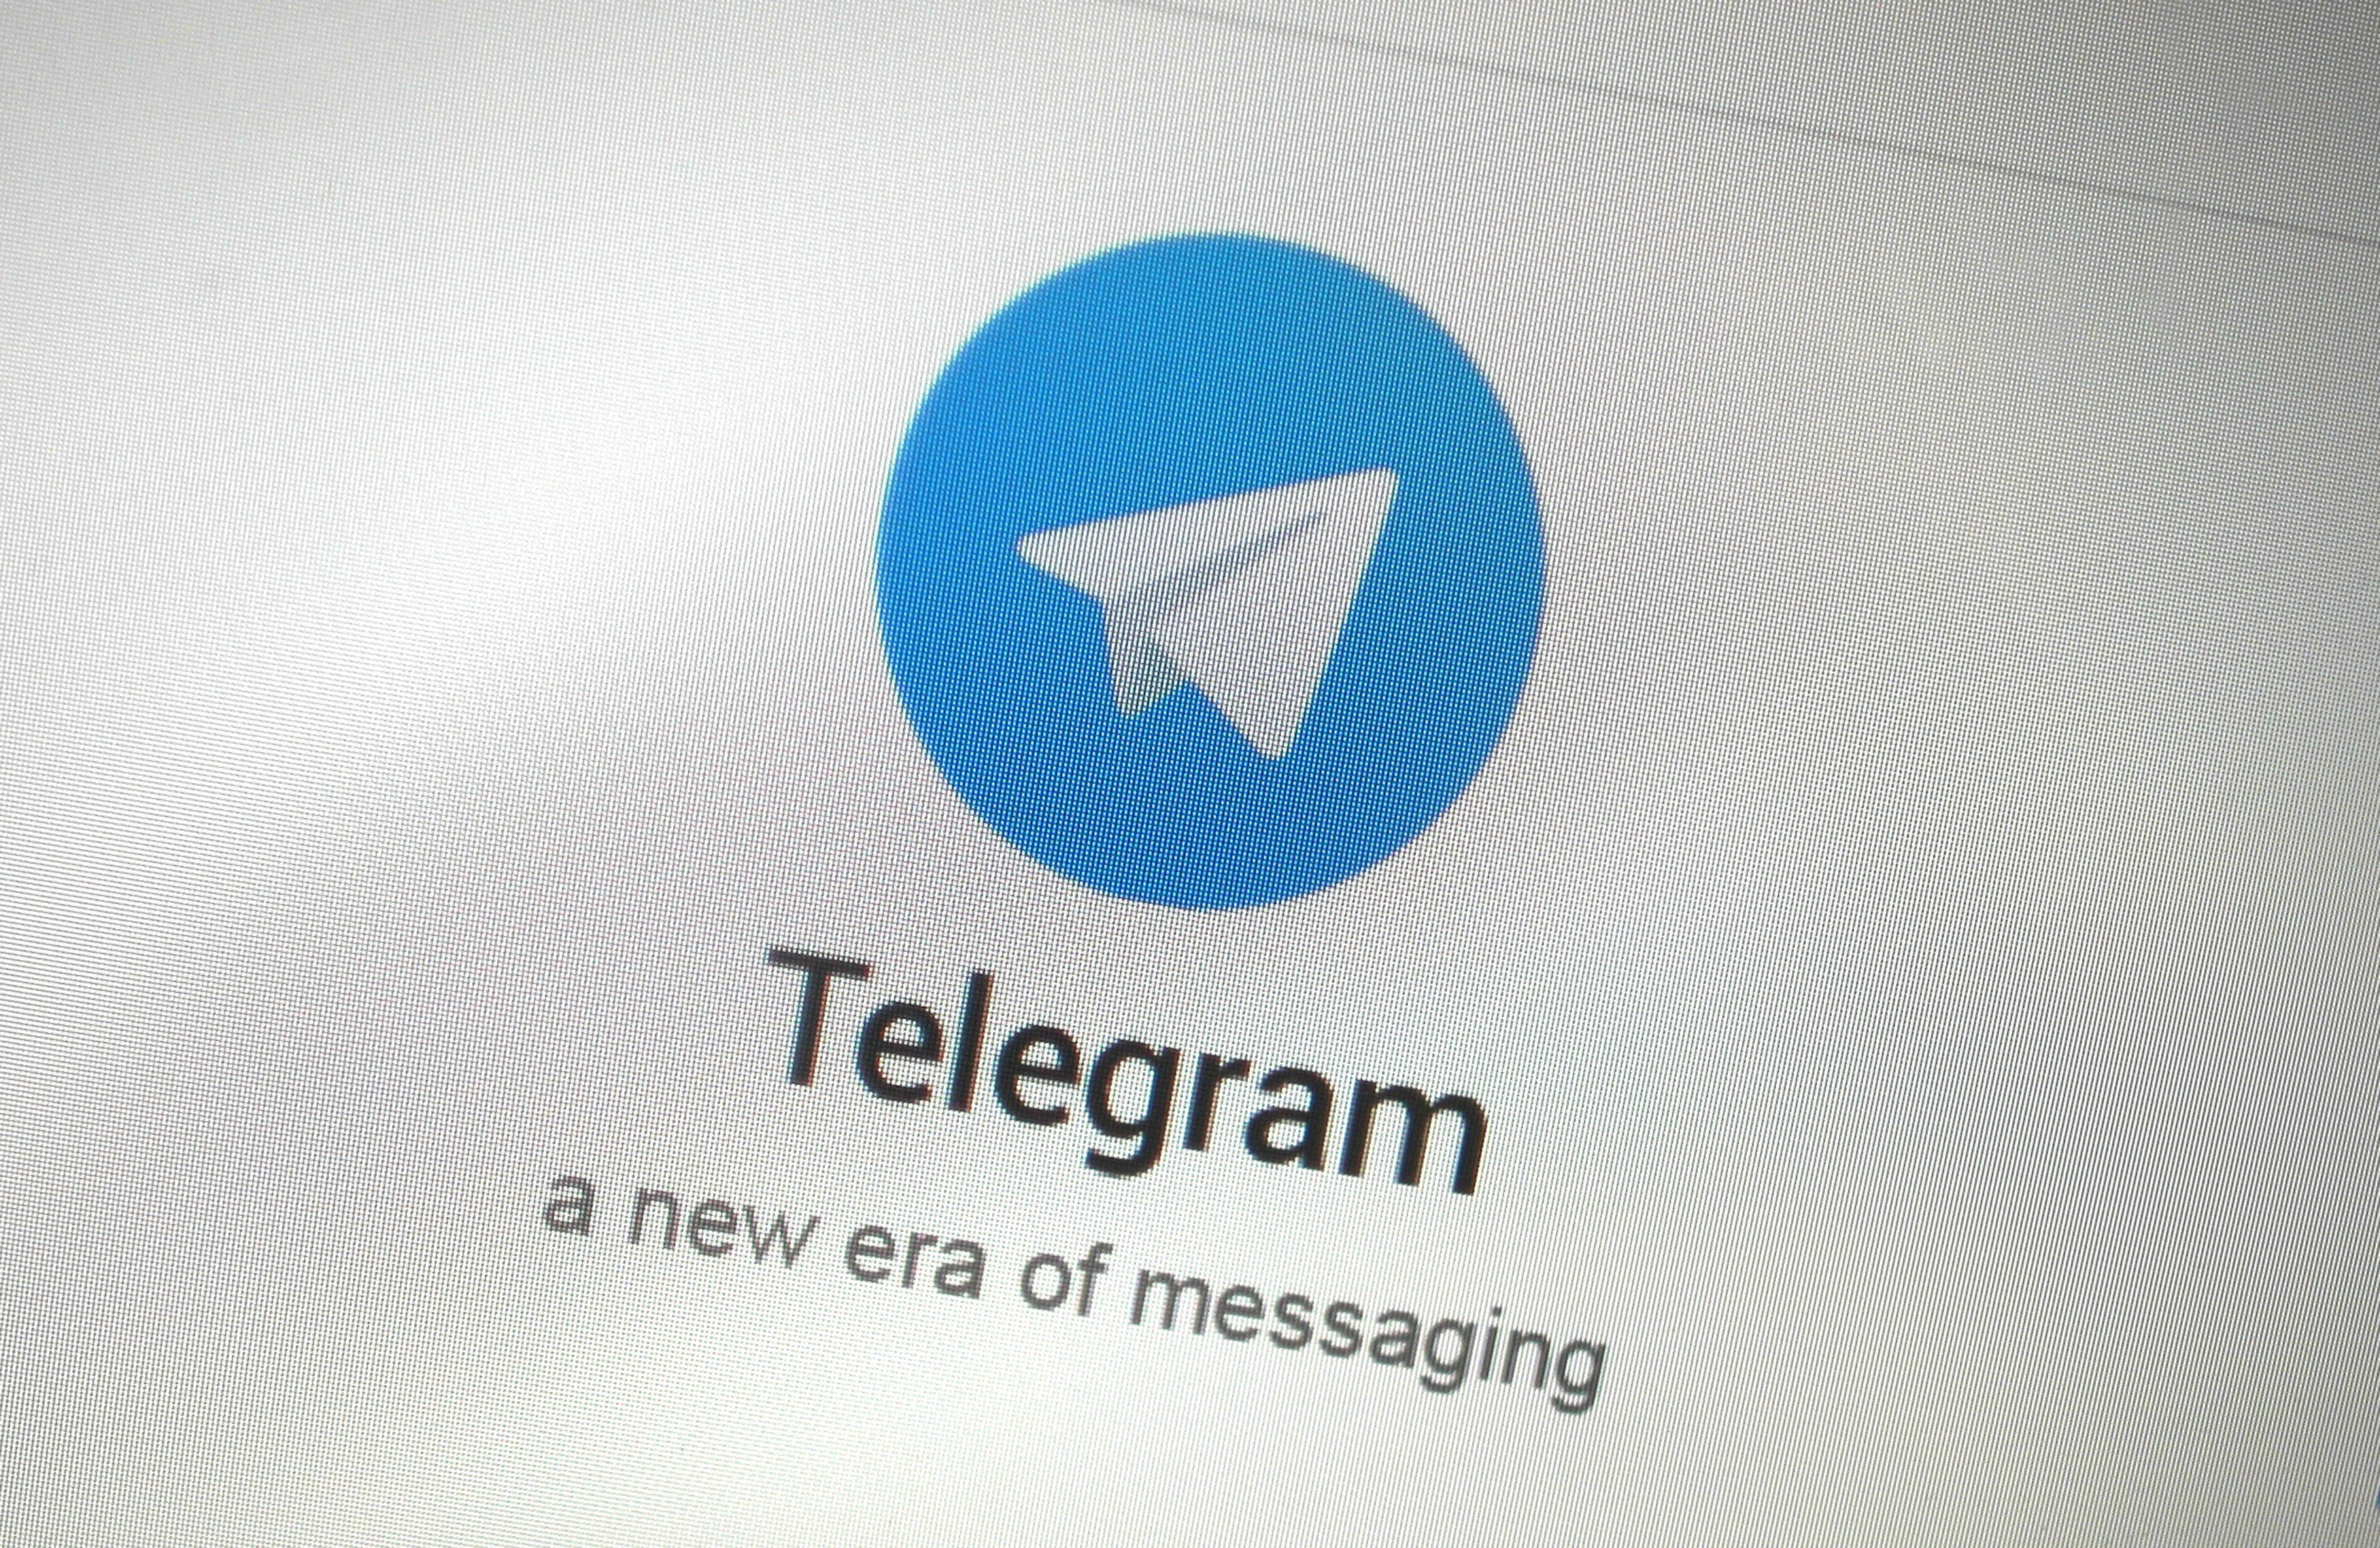 Telegram Premium é lançado com preço de R$ 24,90 e promete